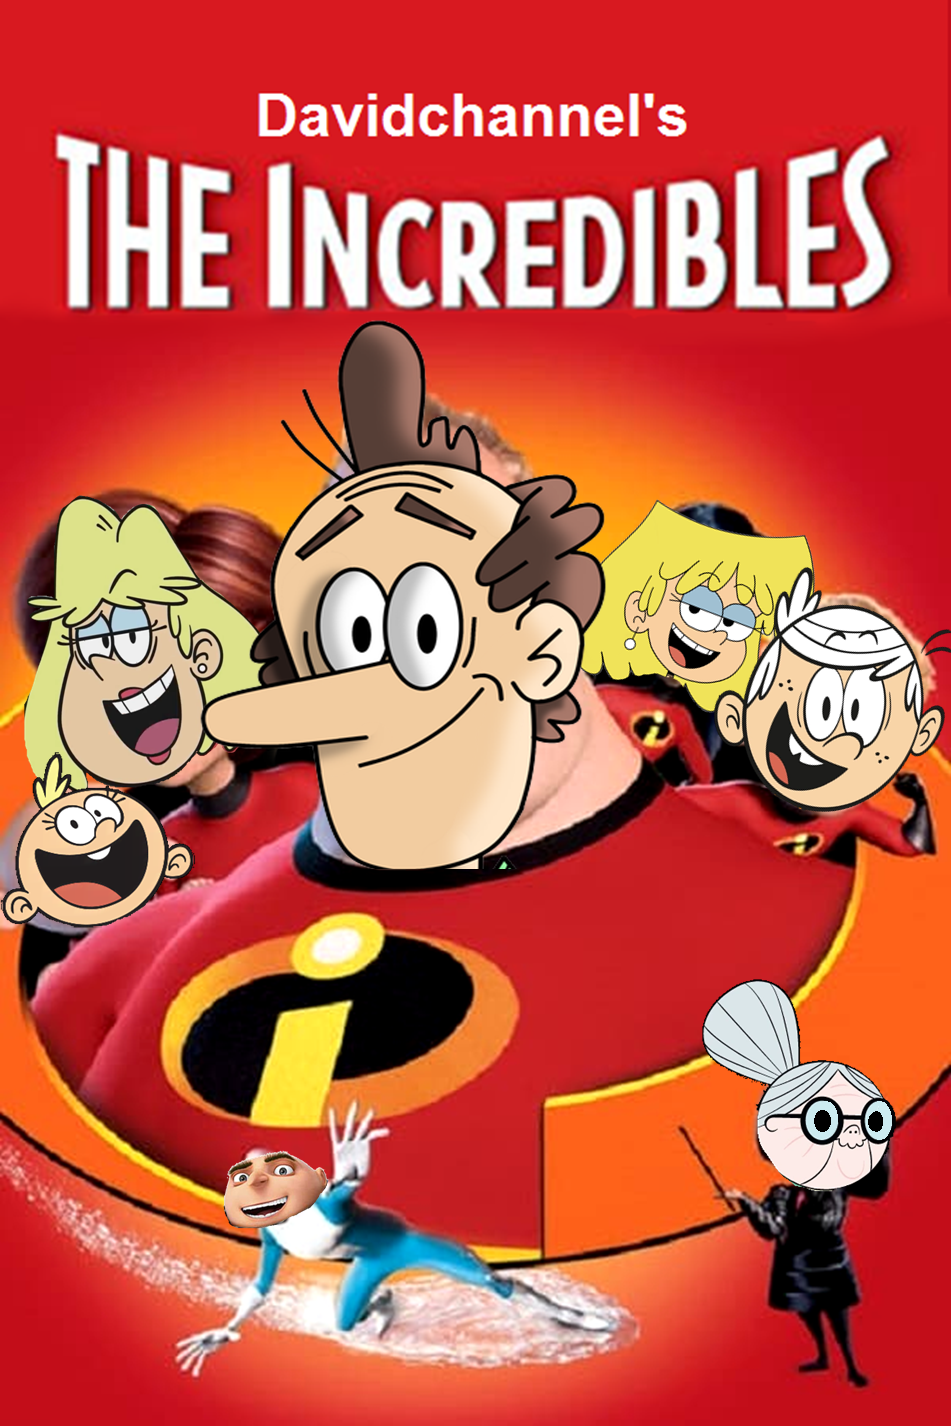 The Incredibles Davidchannels Version Scratchpad Iii Wiki Fandom